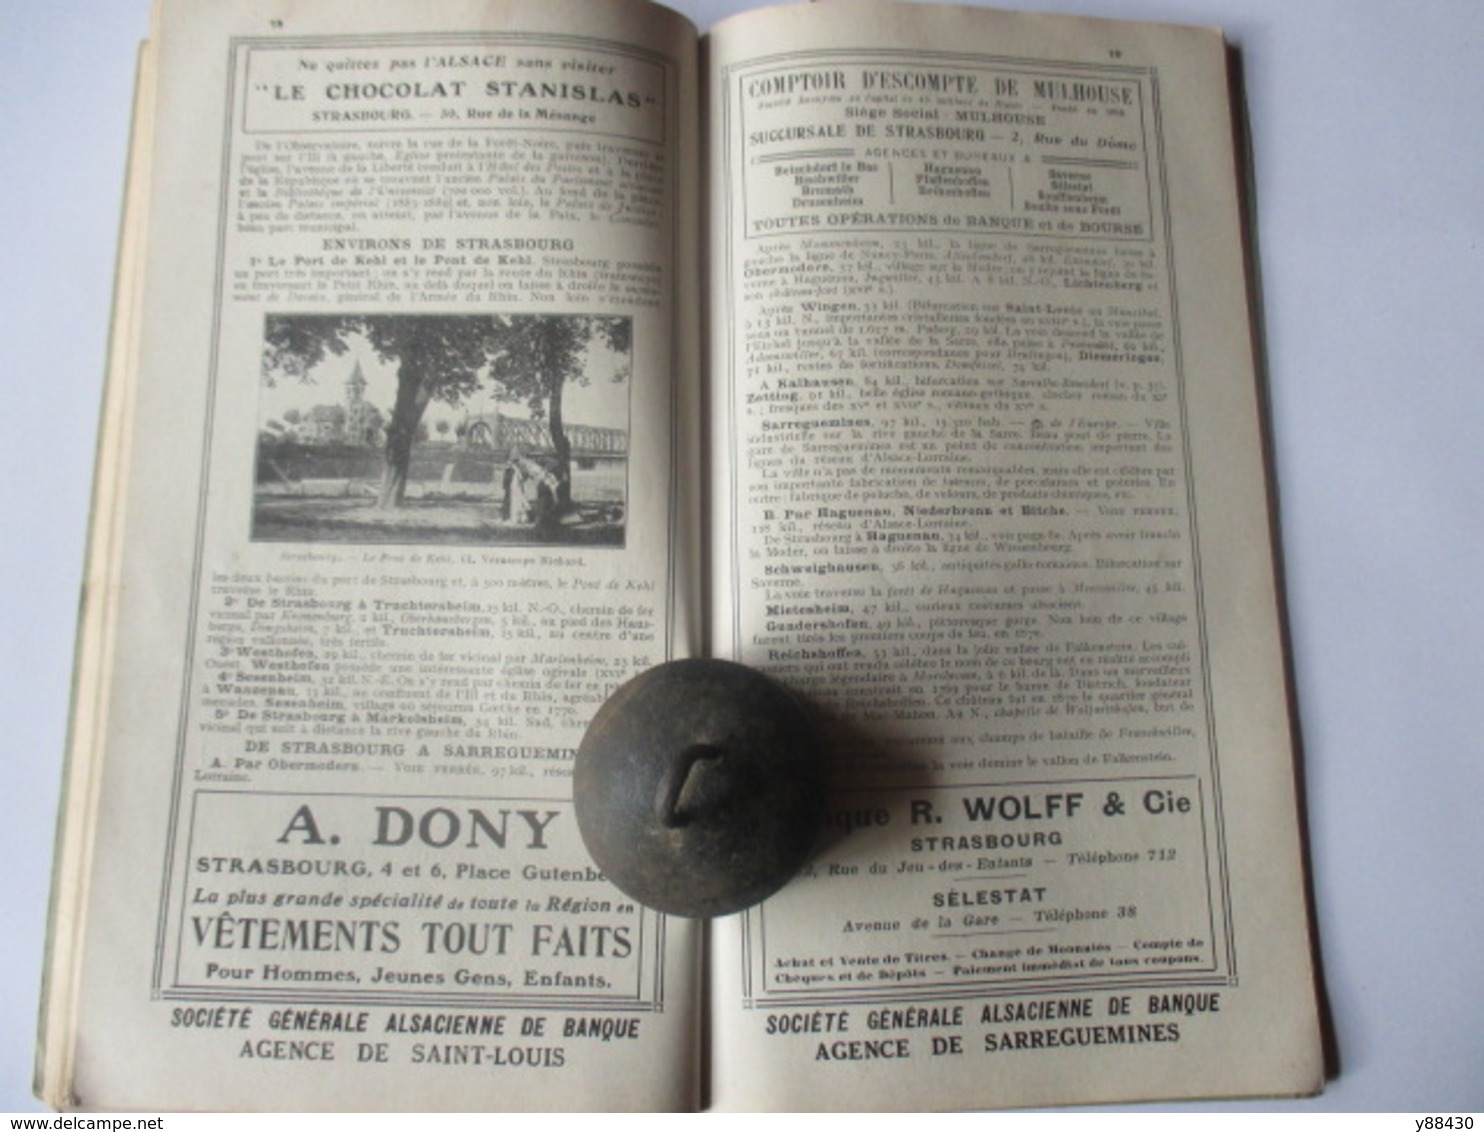 Livret Guides du Touriste THIOLIER de 1923 - LUXEMBOURG / LORRAINE / ALSACE / VOSGES  - 124 pages - 25 photos